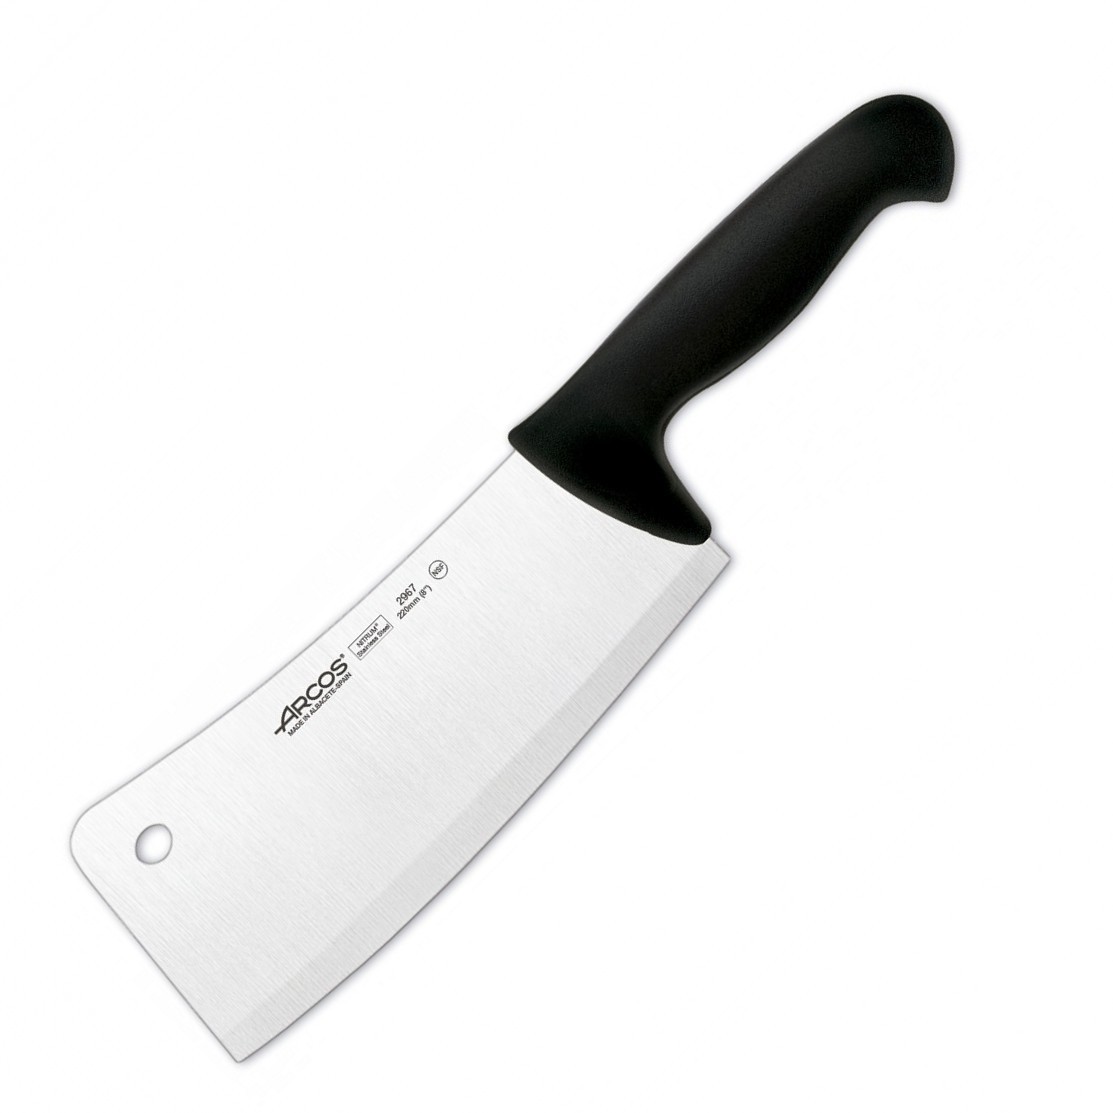 Нож для рубки мяса 2900, 220 мм, 540 г., черный